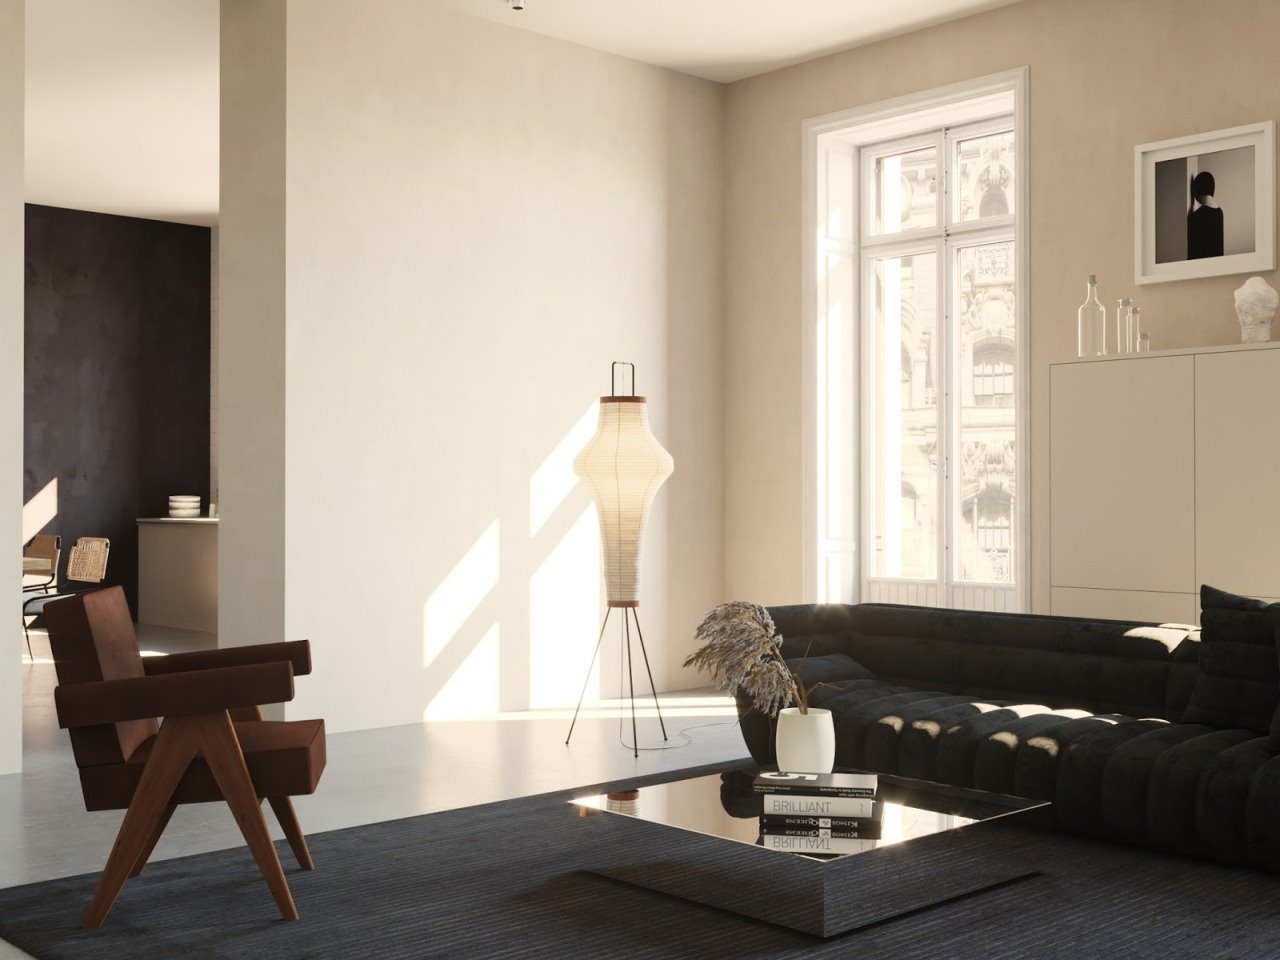 Salon de una casa moderna con butaca disen~ada por Pierre Jeanneret. Silla Capitol Complex, diseño de Pierre Jeanneret que edita Cassina